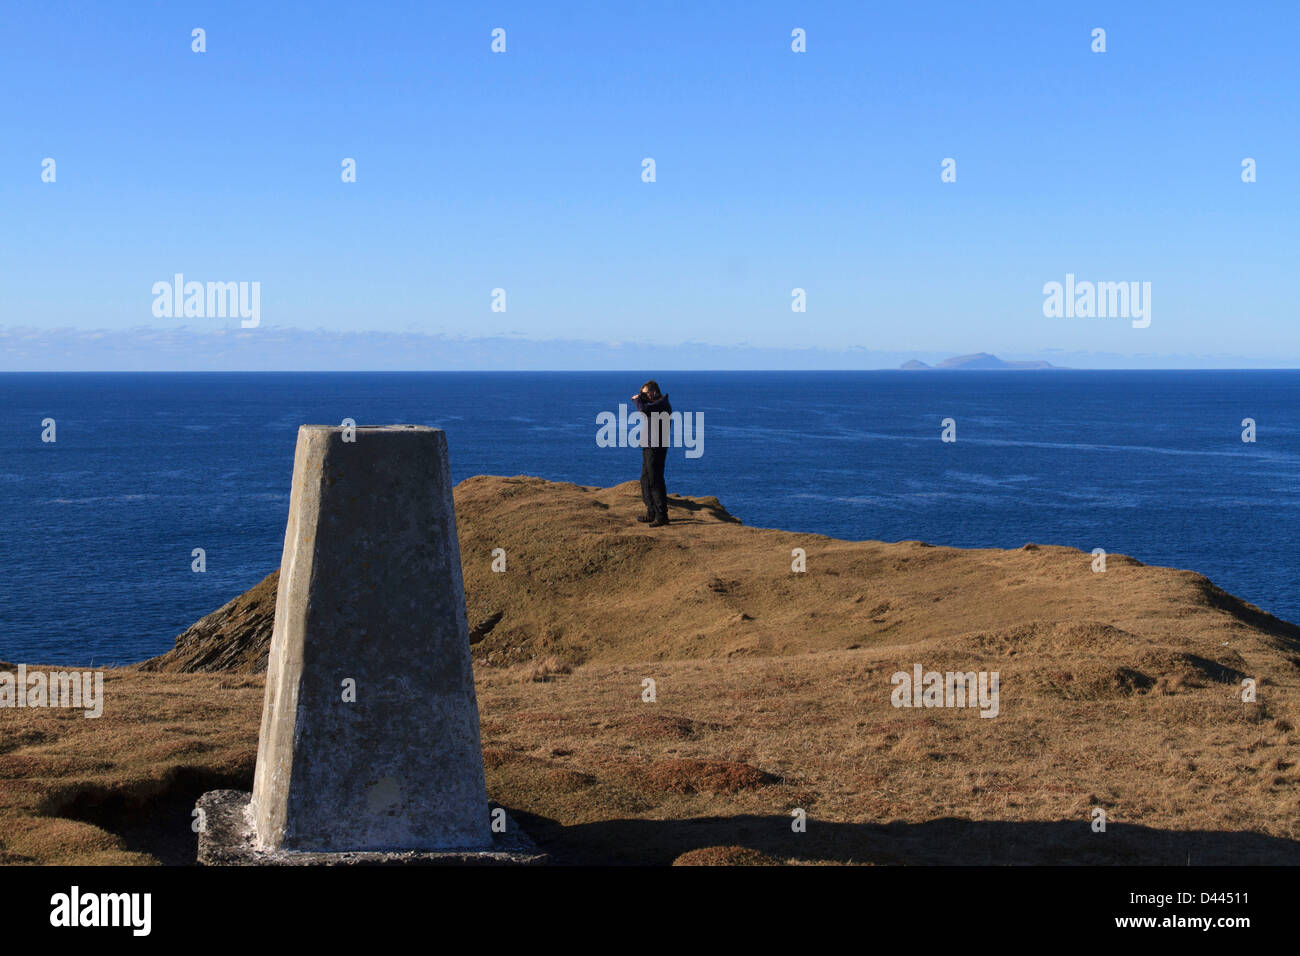 Un homme est photographe de prendre une photo sur le bord de la mer avec un point trigonométrique en premier plan Banque D'Images